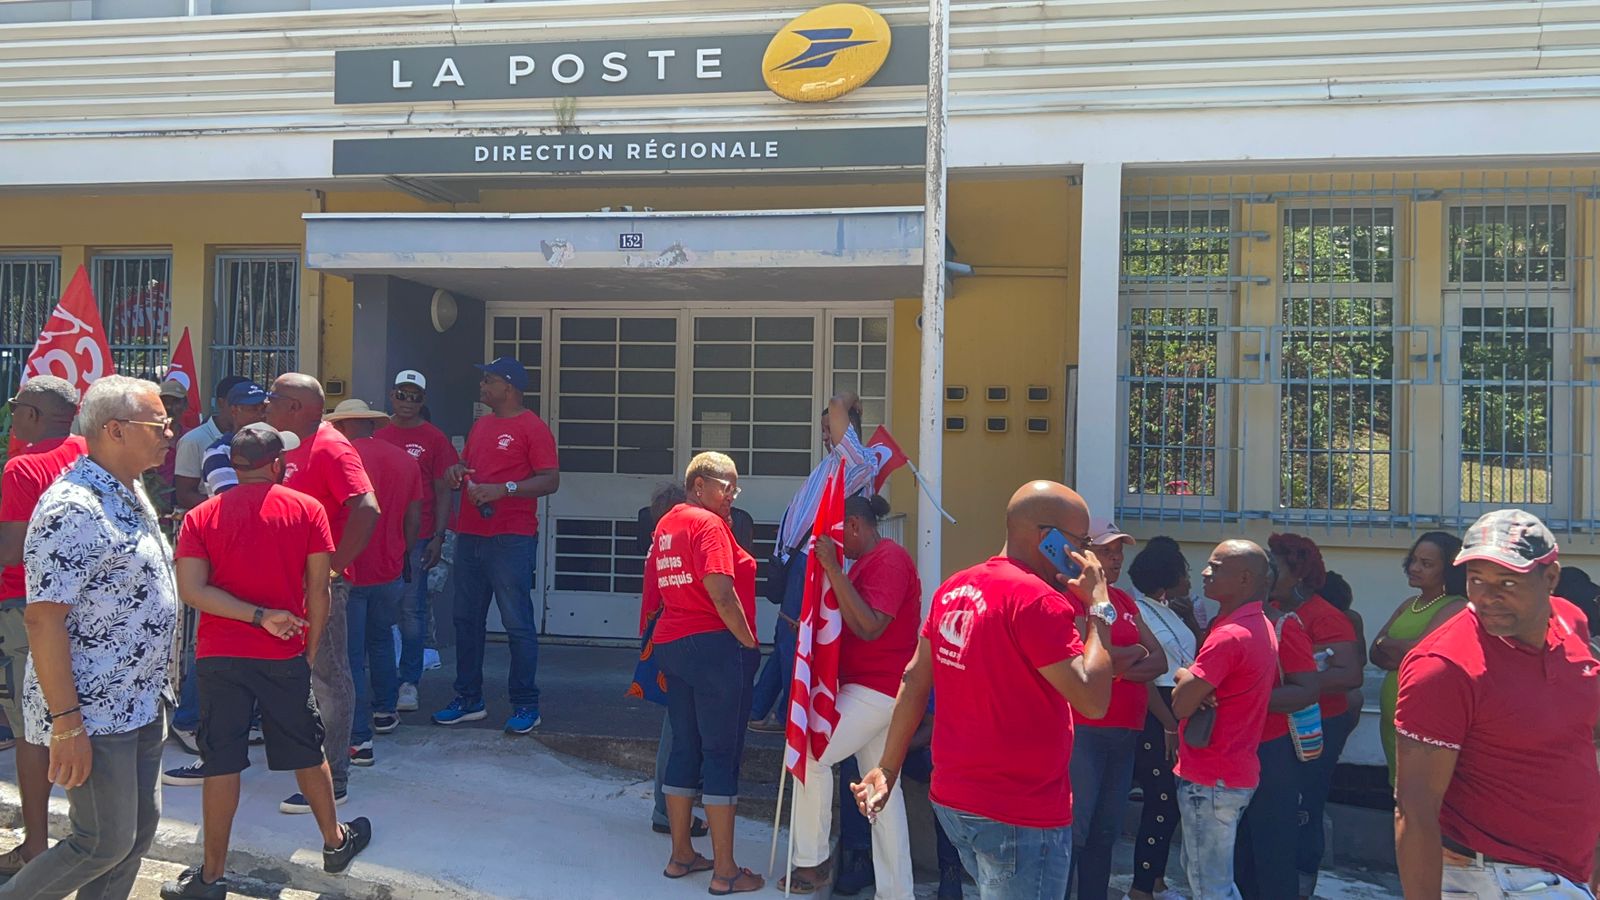     Les syndicats de La Poste mobilisés en soutien à deux représentants du personnel

